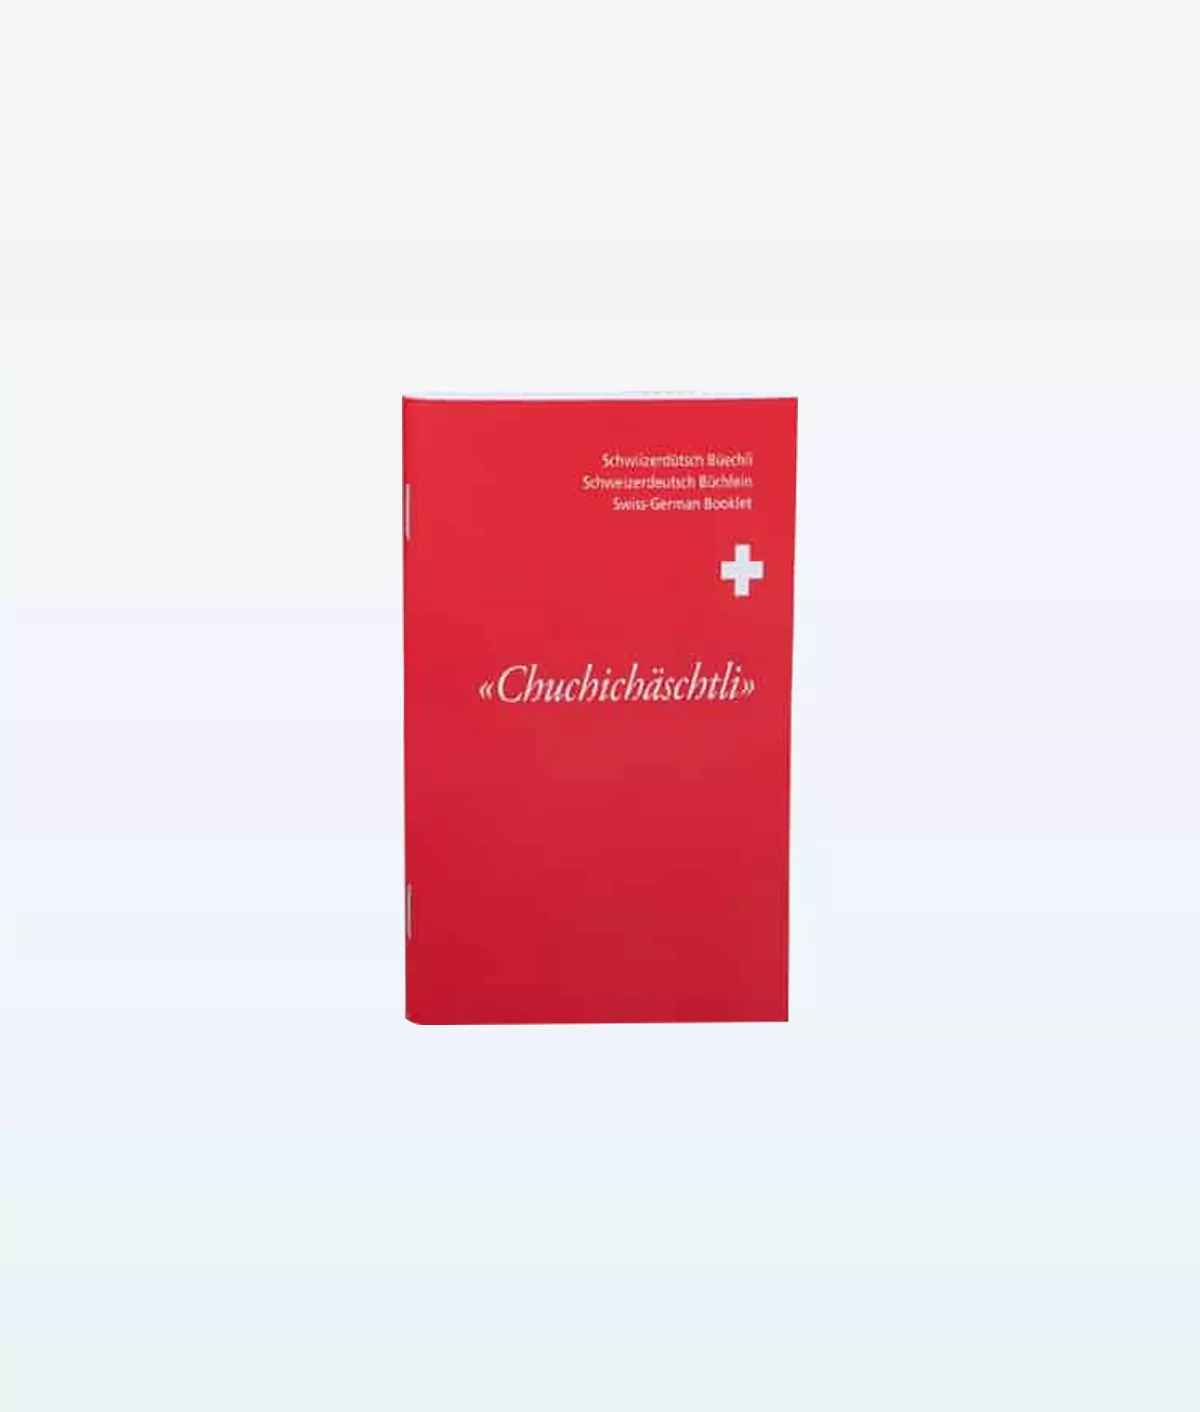 Dictionnaire suisse allemand 1